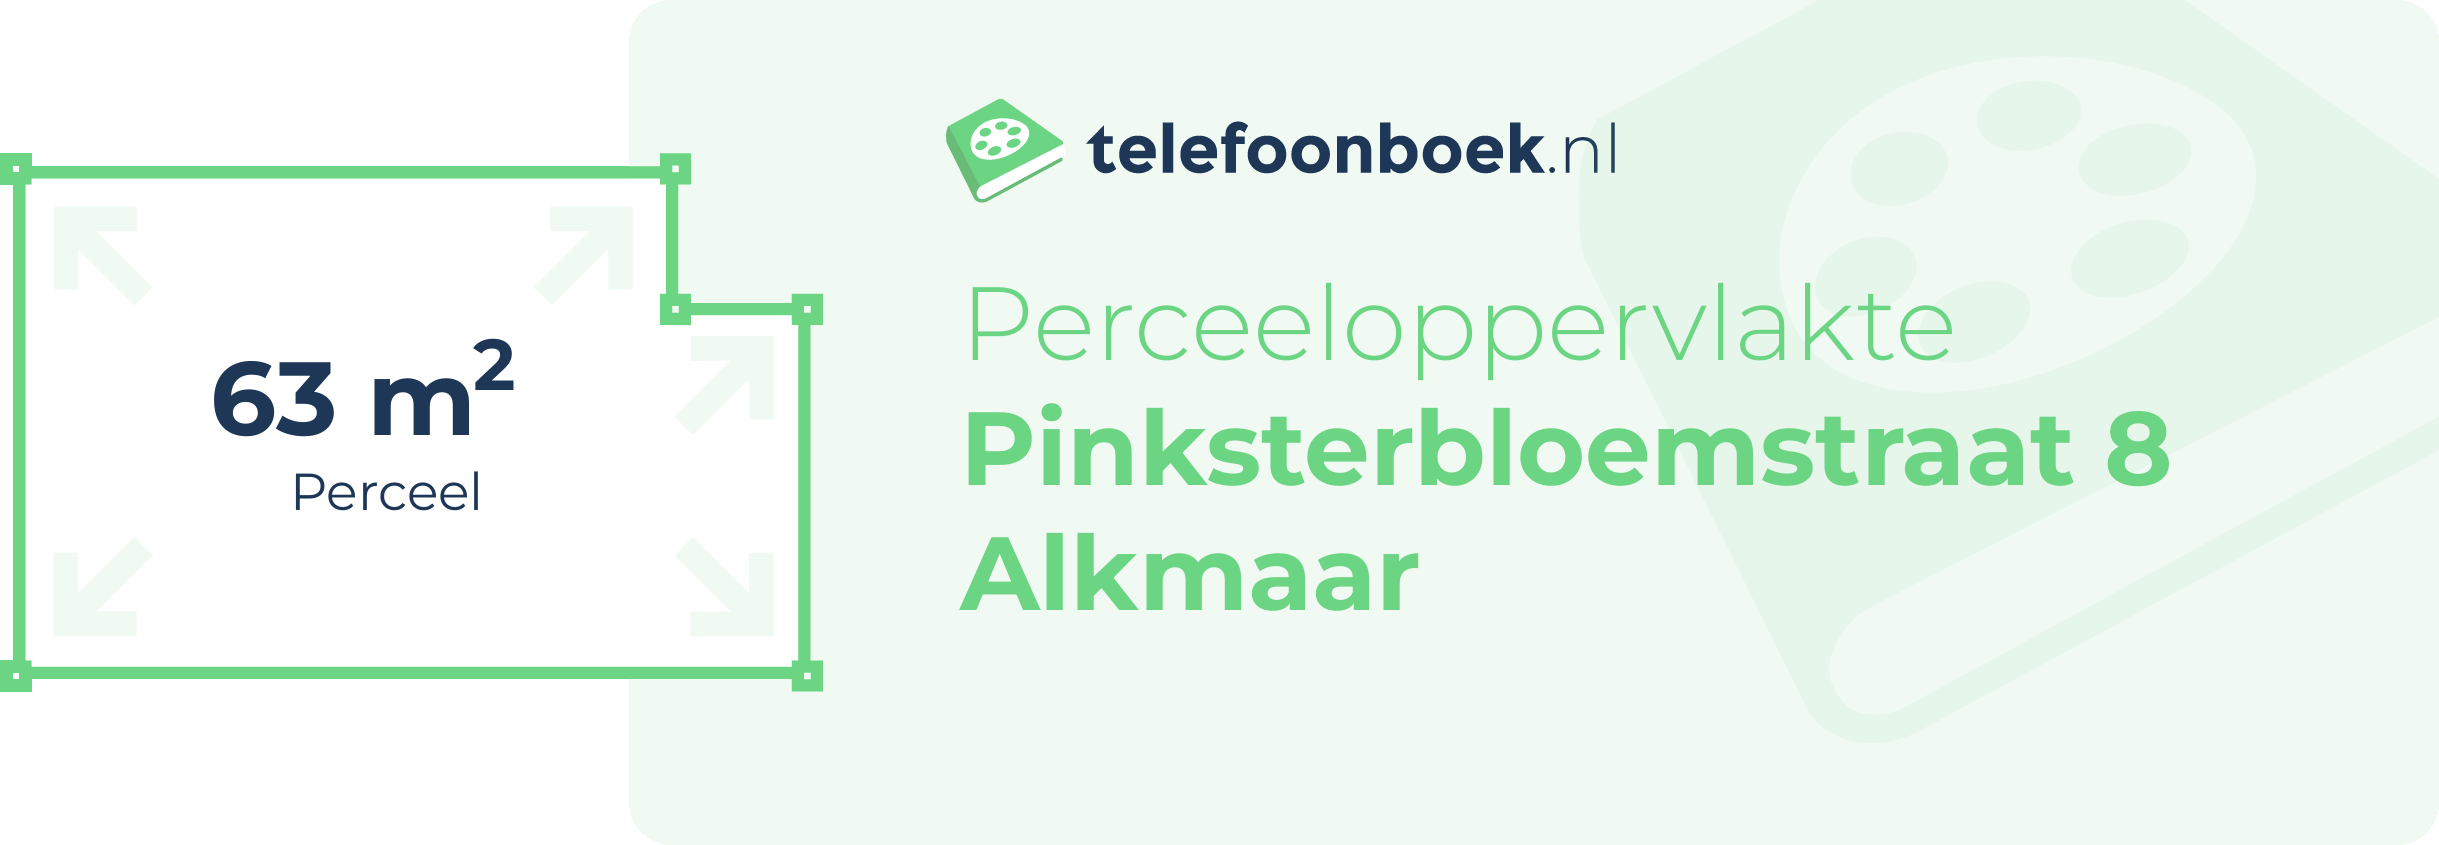 Perceeloppervlakte Pinksterbloemstraat 8 Alkmaar